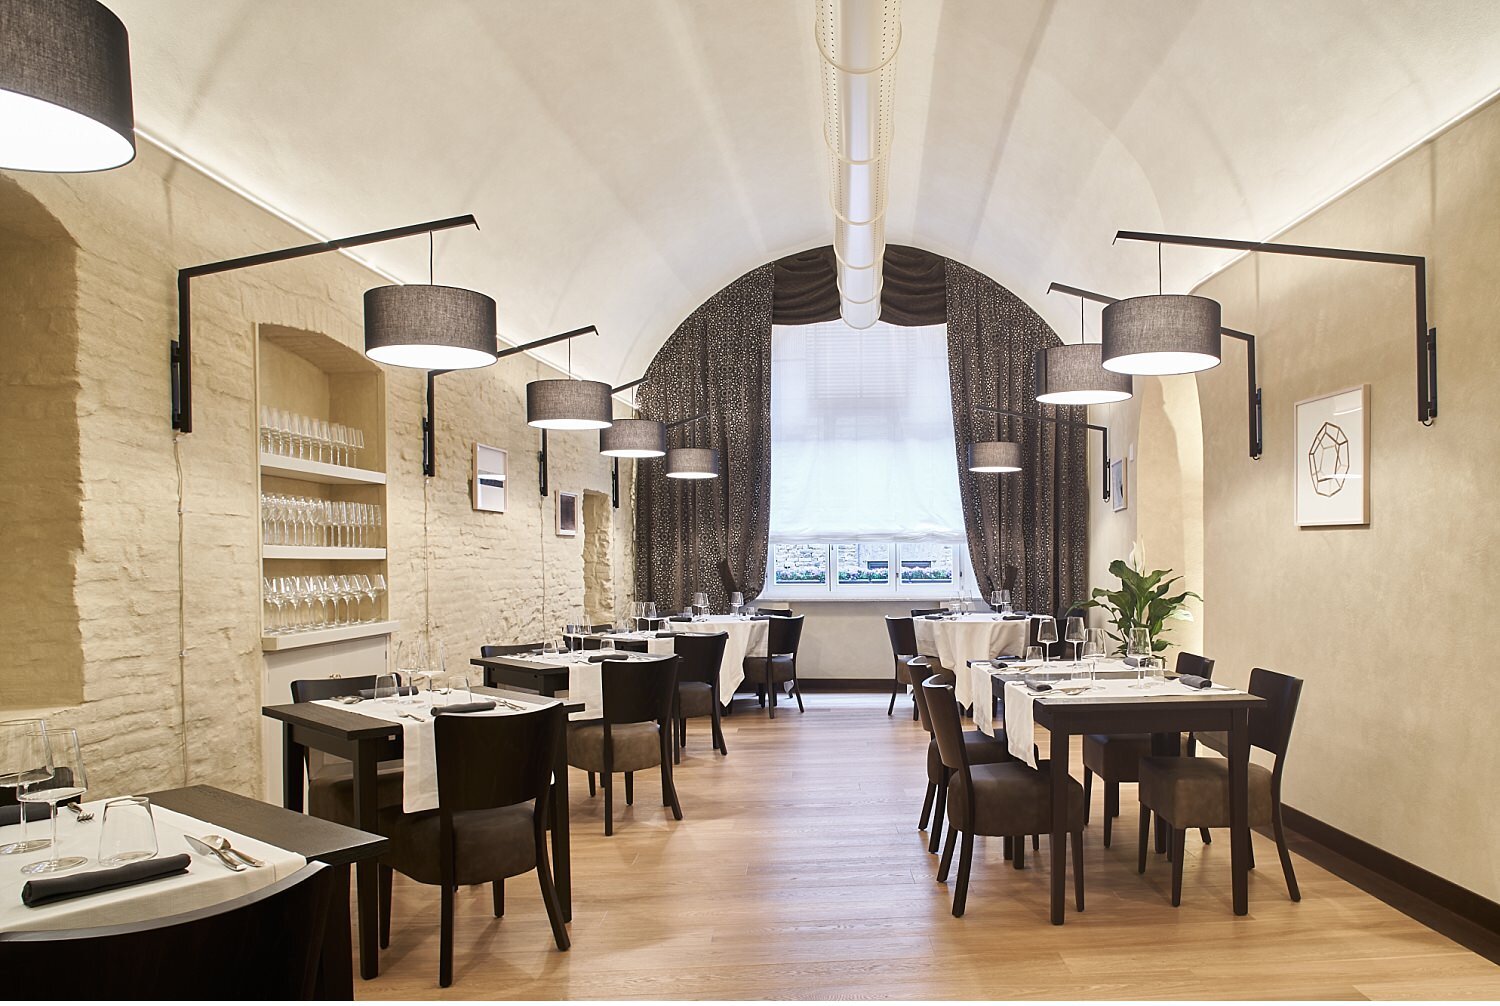  Storico ristorante di Siena, ristrutturato e rinnovato da una nuova proprietà. La cucina è stata affidata a Senio Venturi, chef stellato con una stella Michelin del ristorante L'Asinello di Villa a Sesta nel cuore del Chianti. Il locale si trova nel